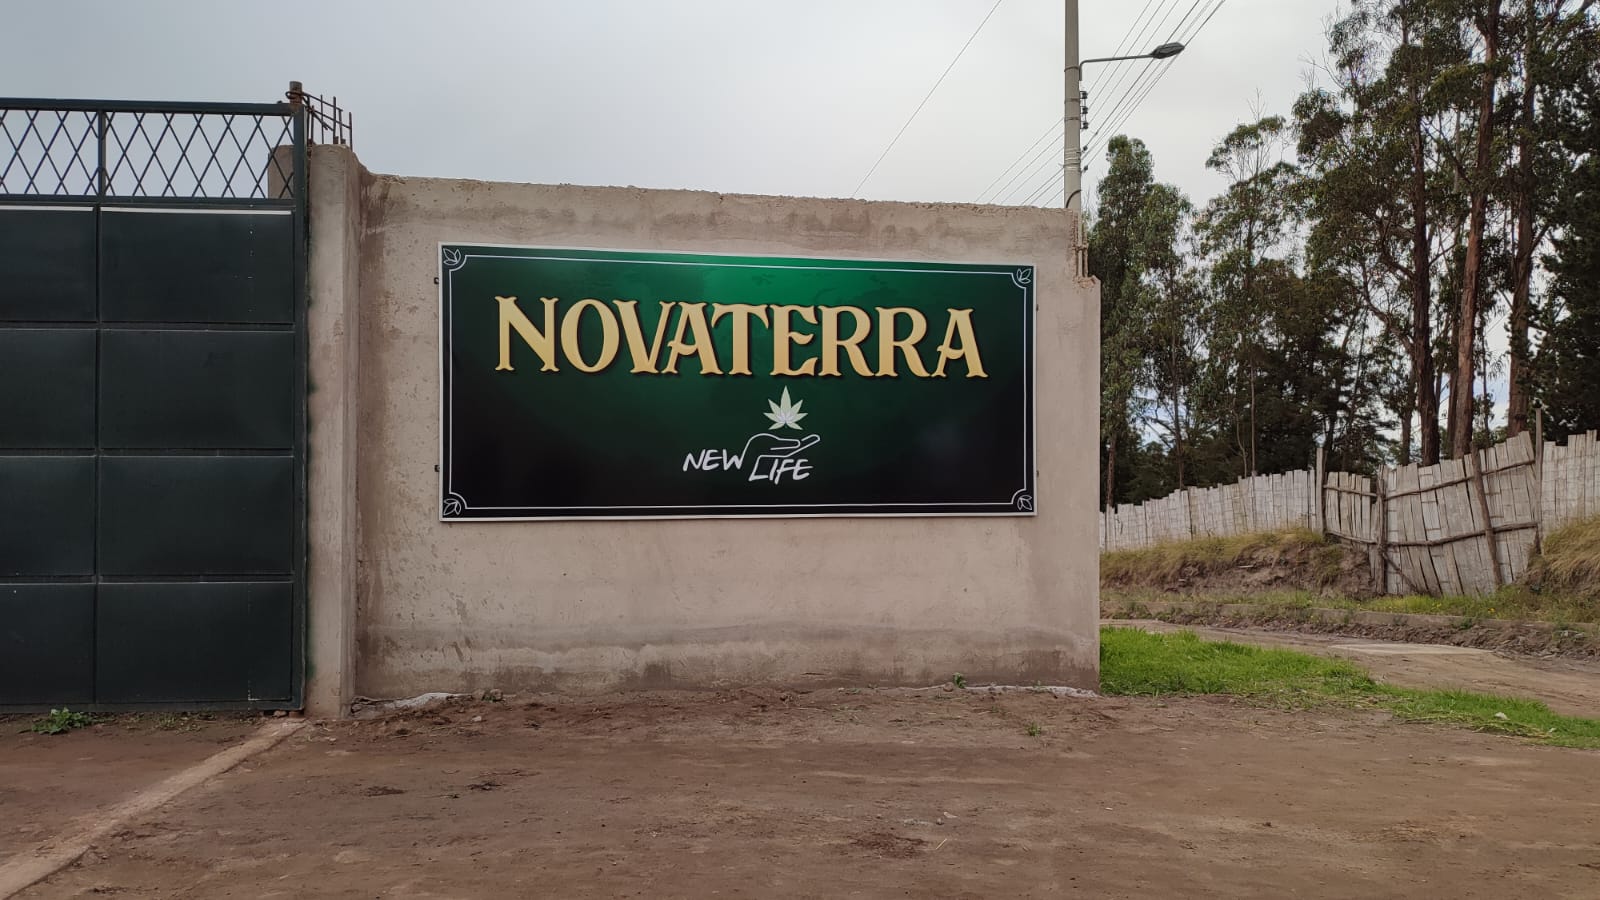 Finca NovaTerra